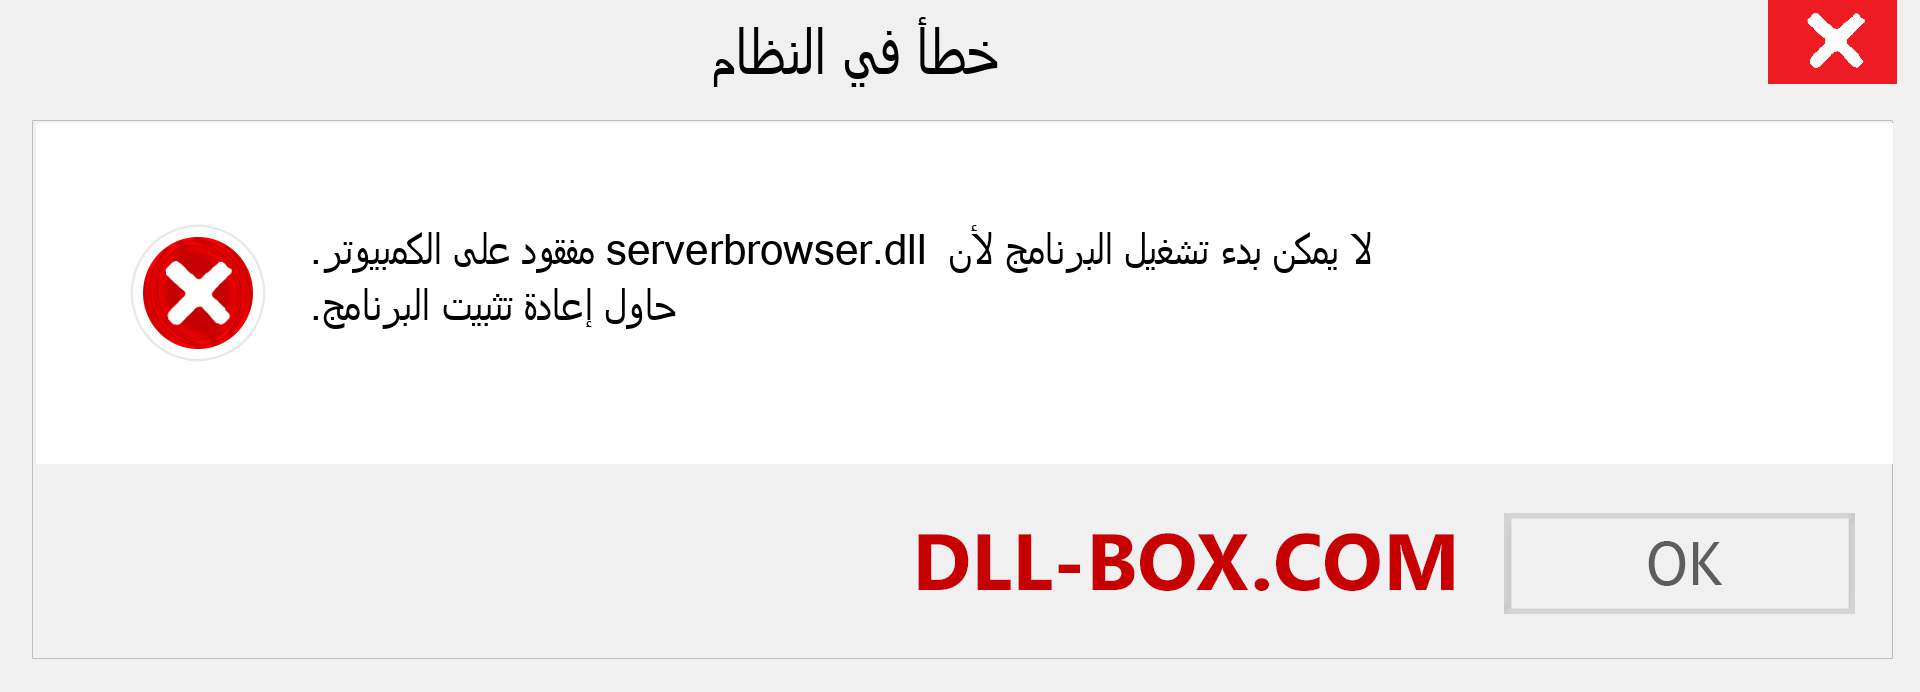 ملف serverbrowser.dll مفقود ؟. التنزيل لنظام التشغيل Windows 7 و 8 و 10 - إصلاح خطأ serverbrowser dll المفقود على Windows والصور والصور